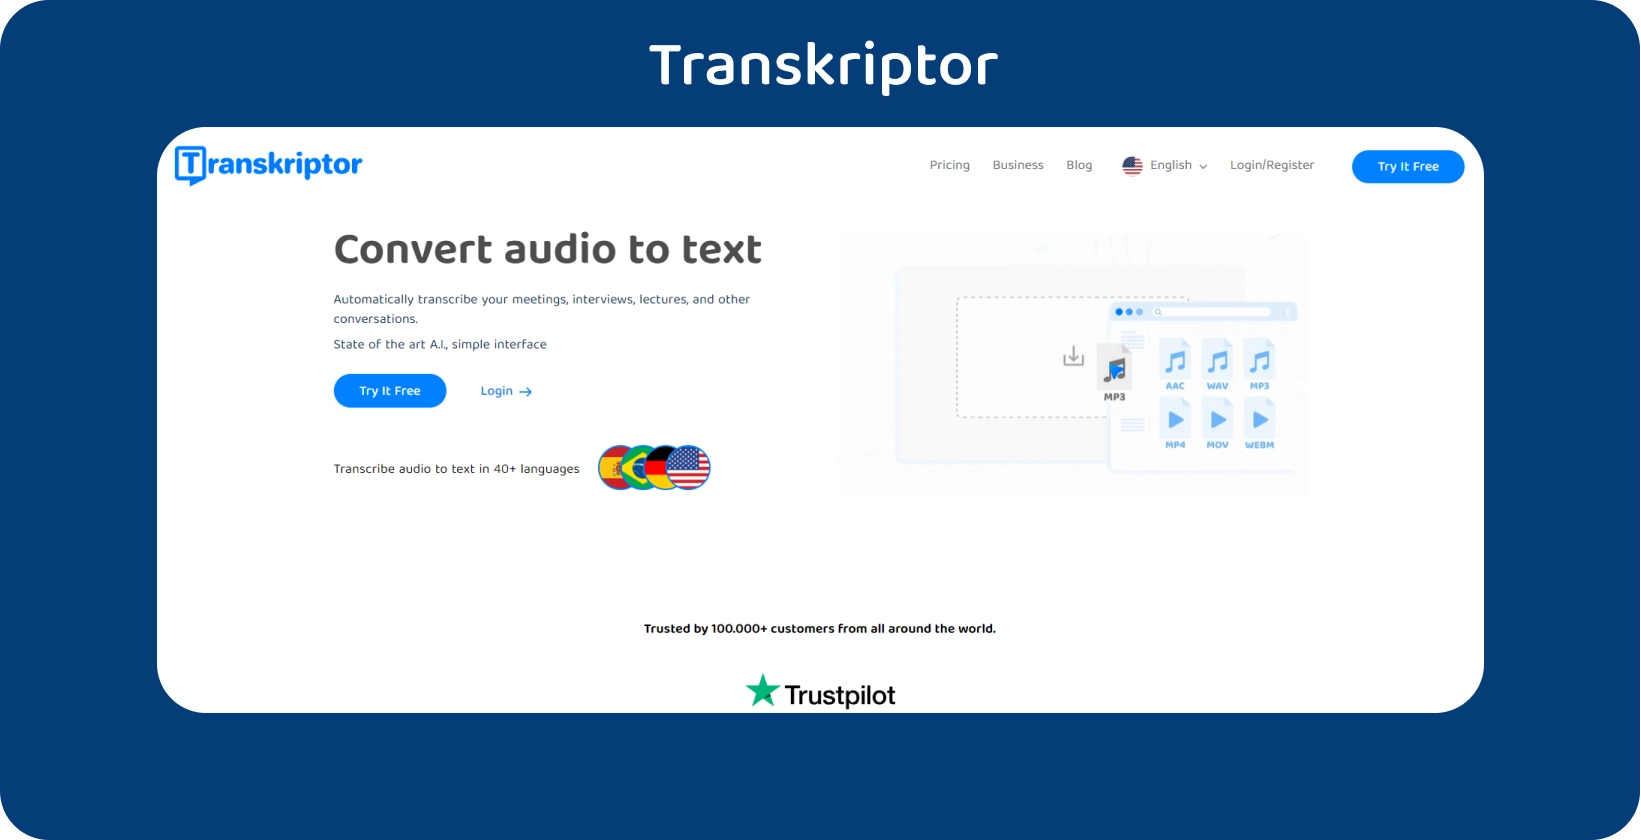 Transkriptor página inicial com um apelo à ação claro, oferecendo serviços de transcrição de áudio para texto.